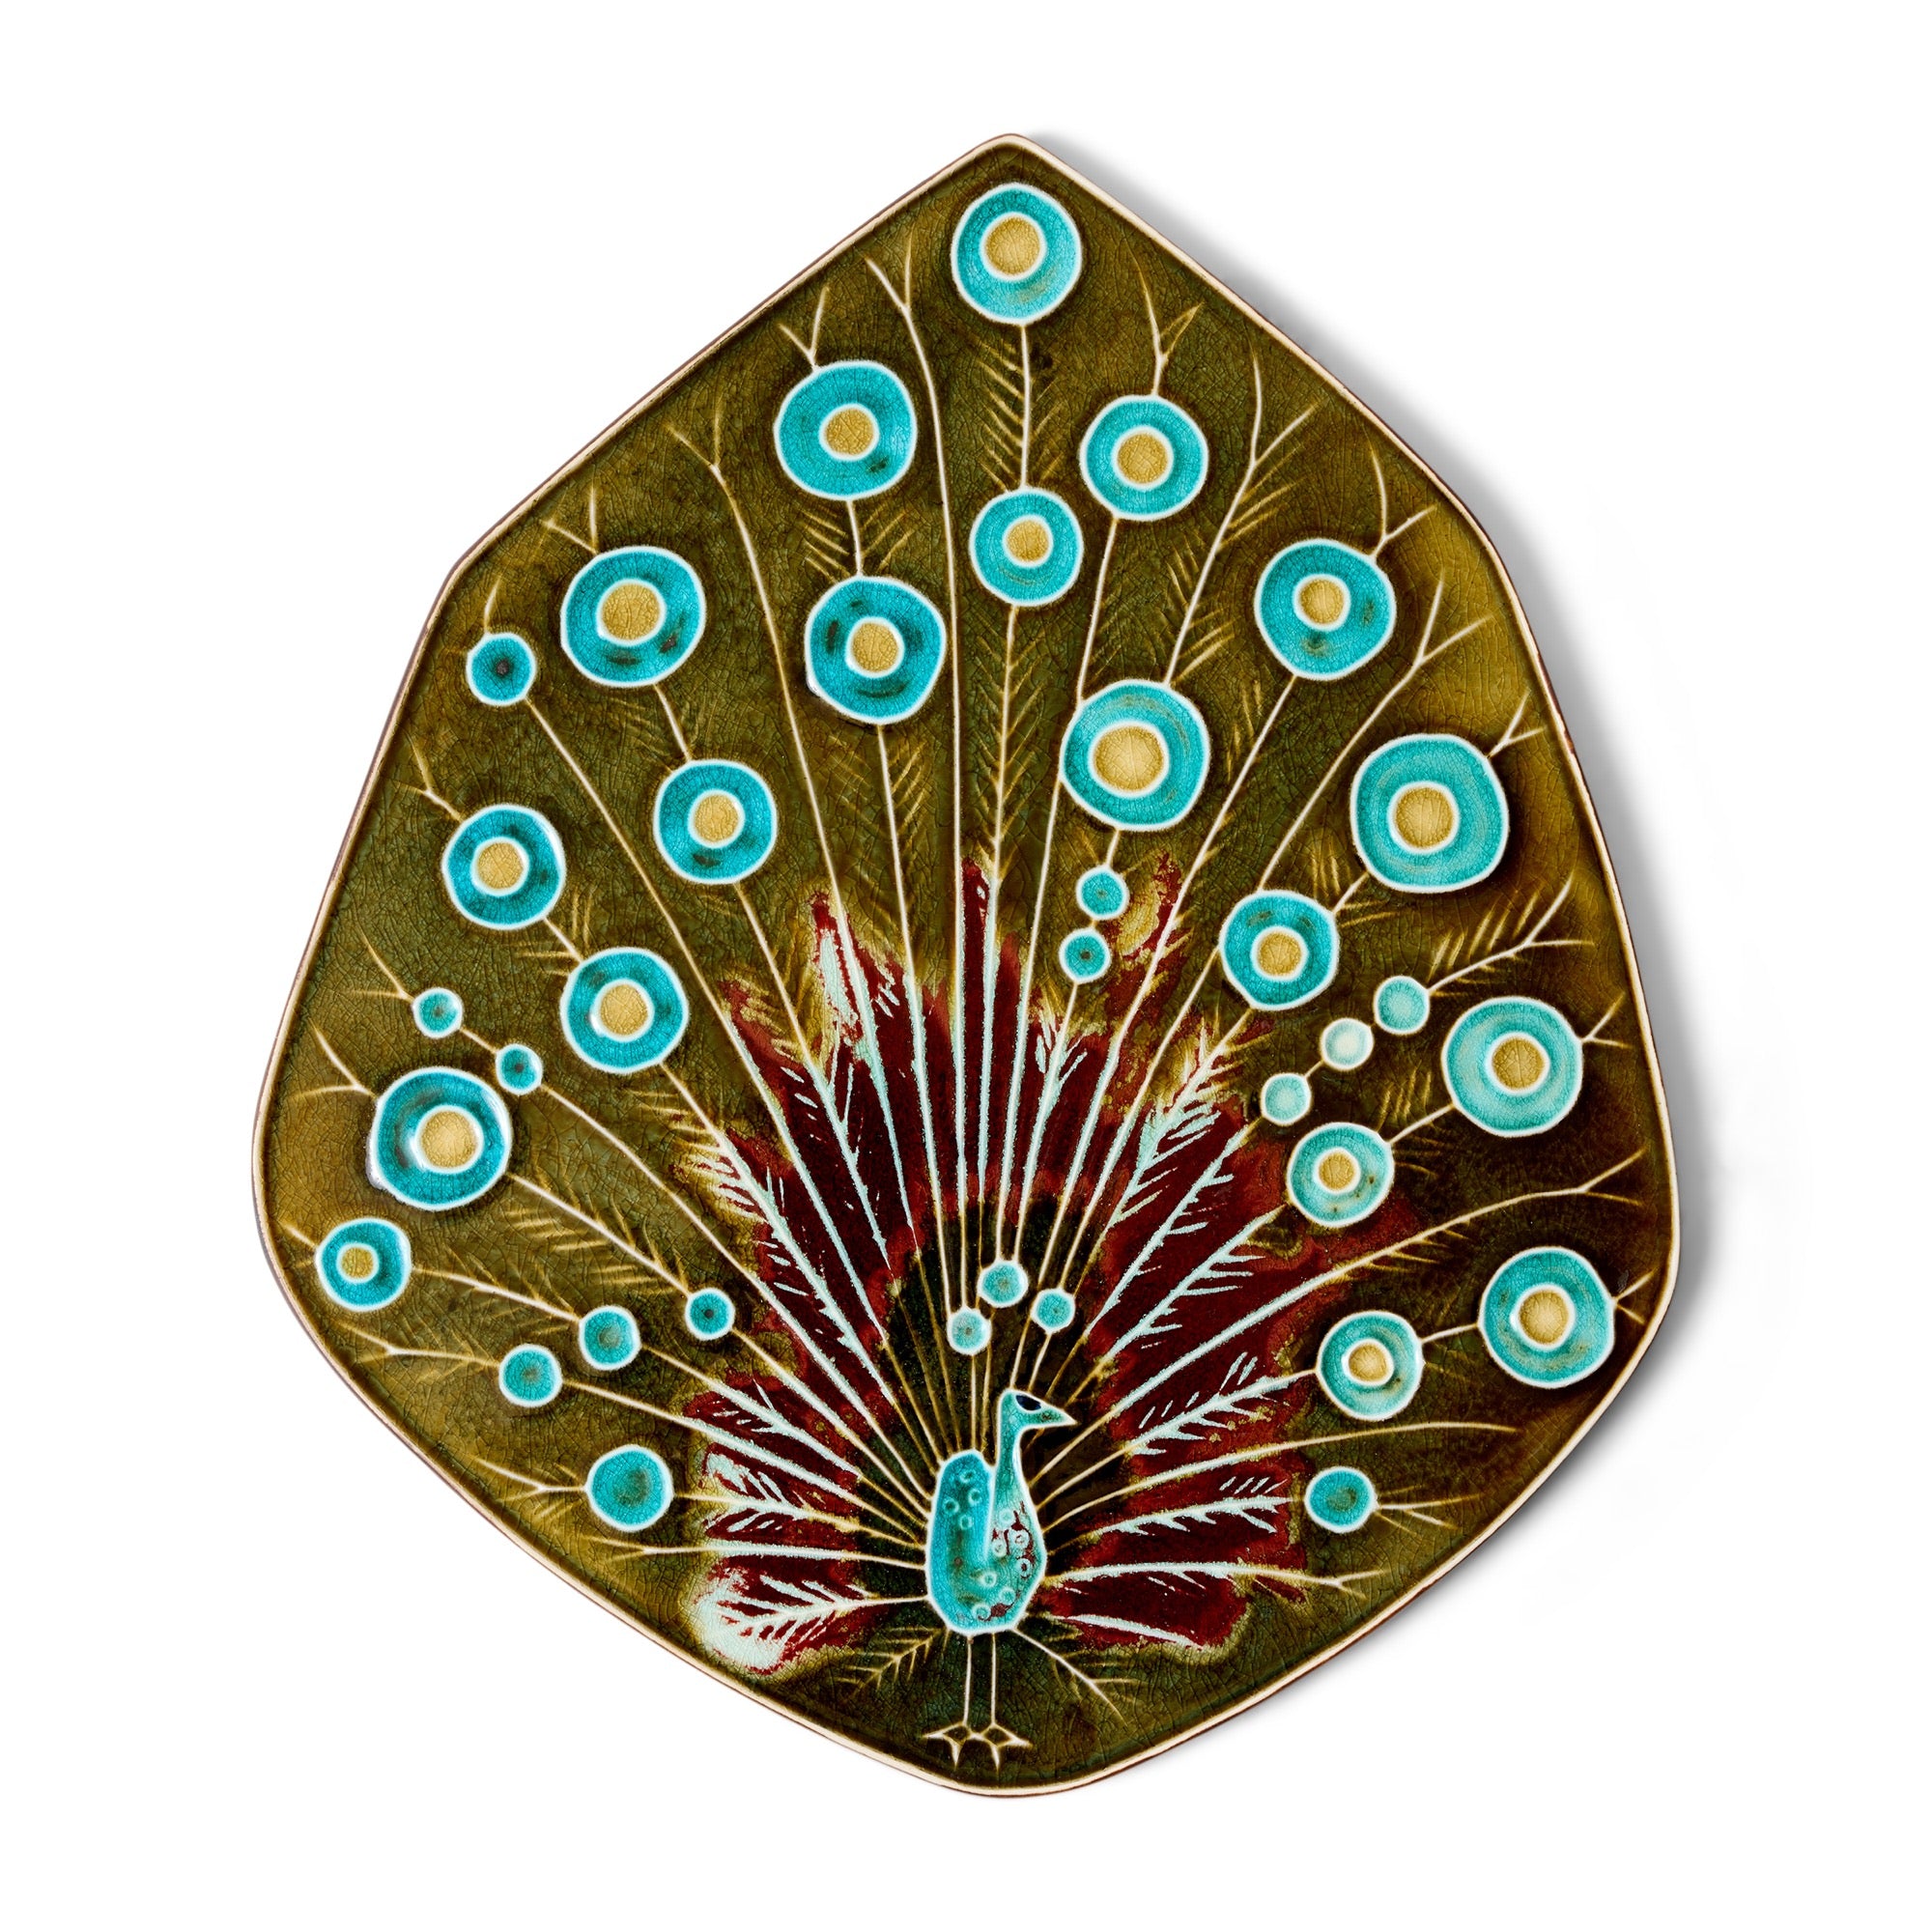 Peacock Ceramic Relief by Annikki Hovisaari for Arabia, 1960's